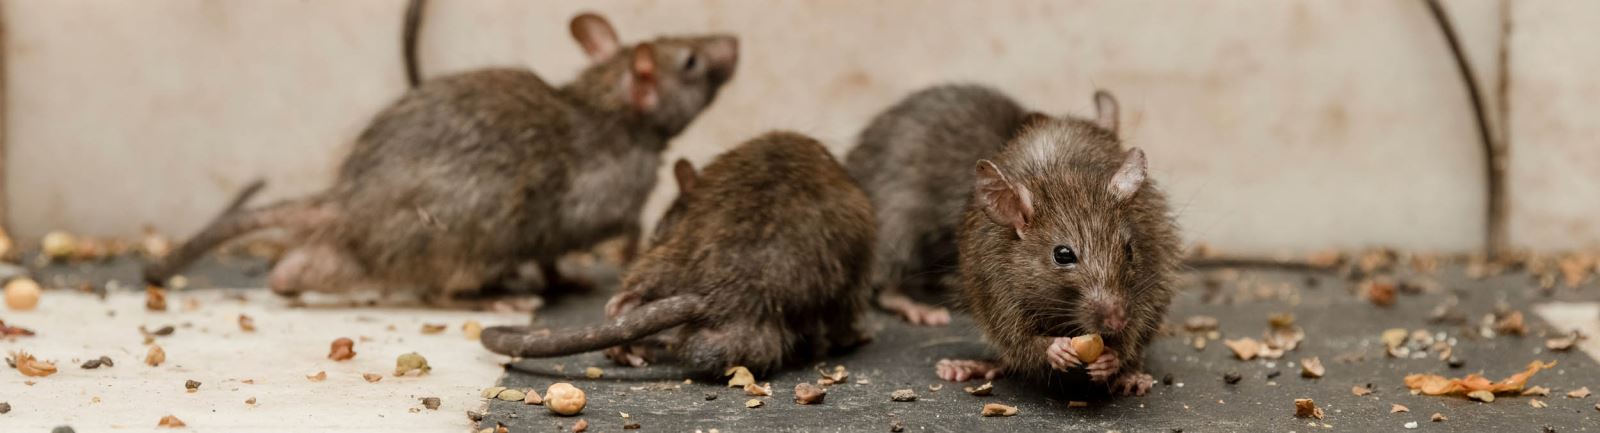 Pest control of rats